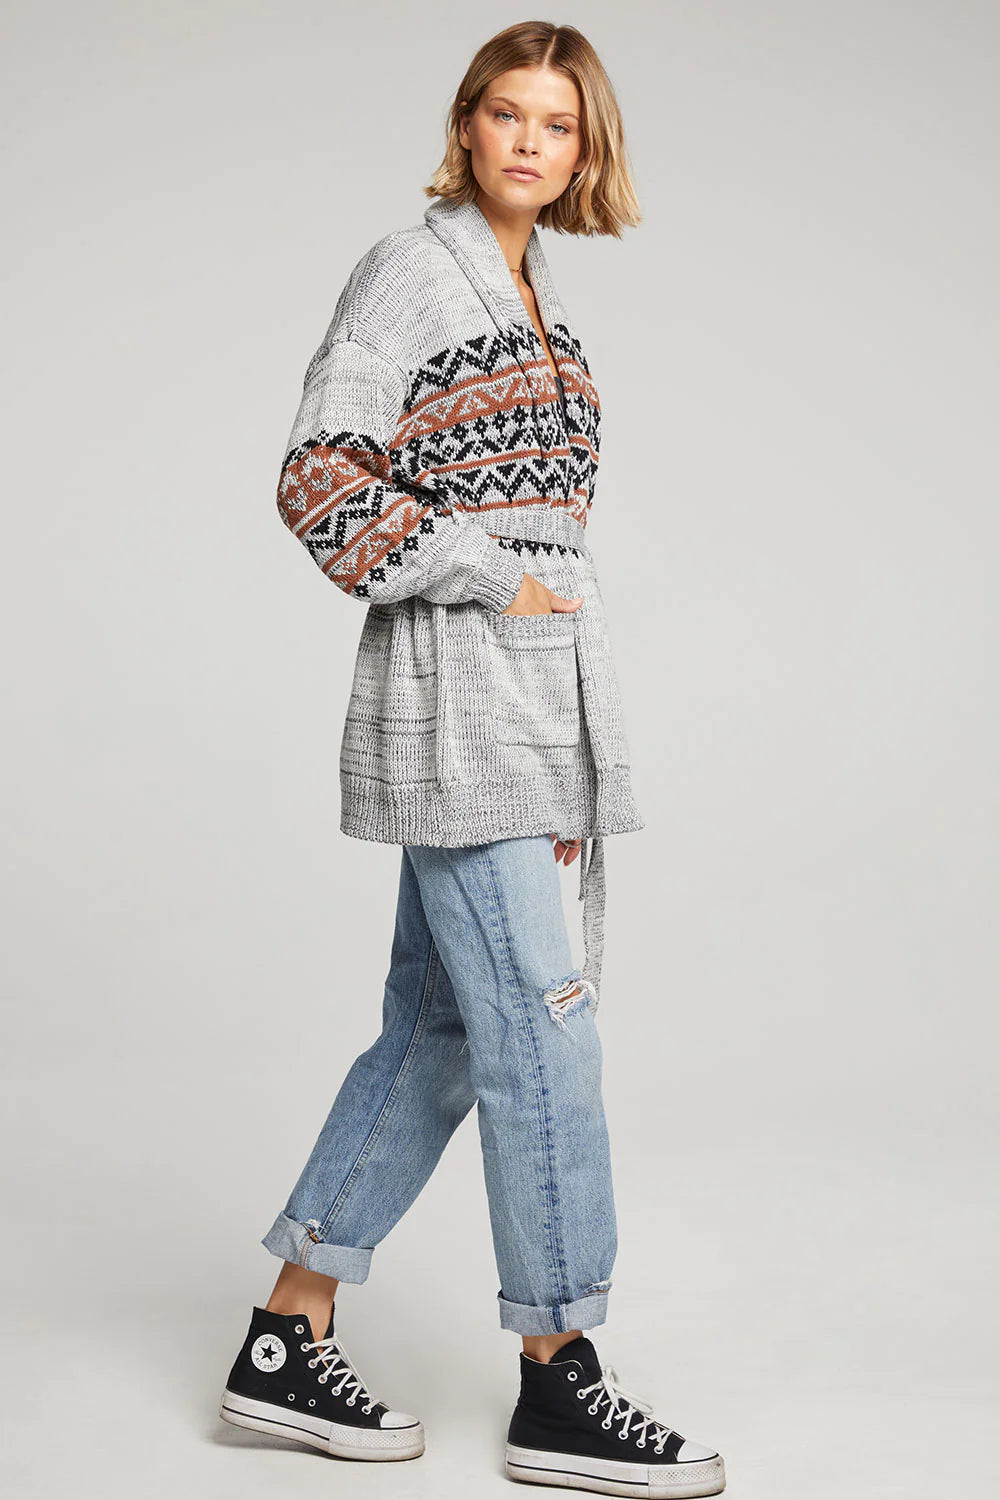 Lyssie Sweater